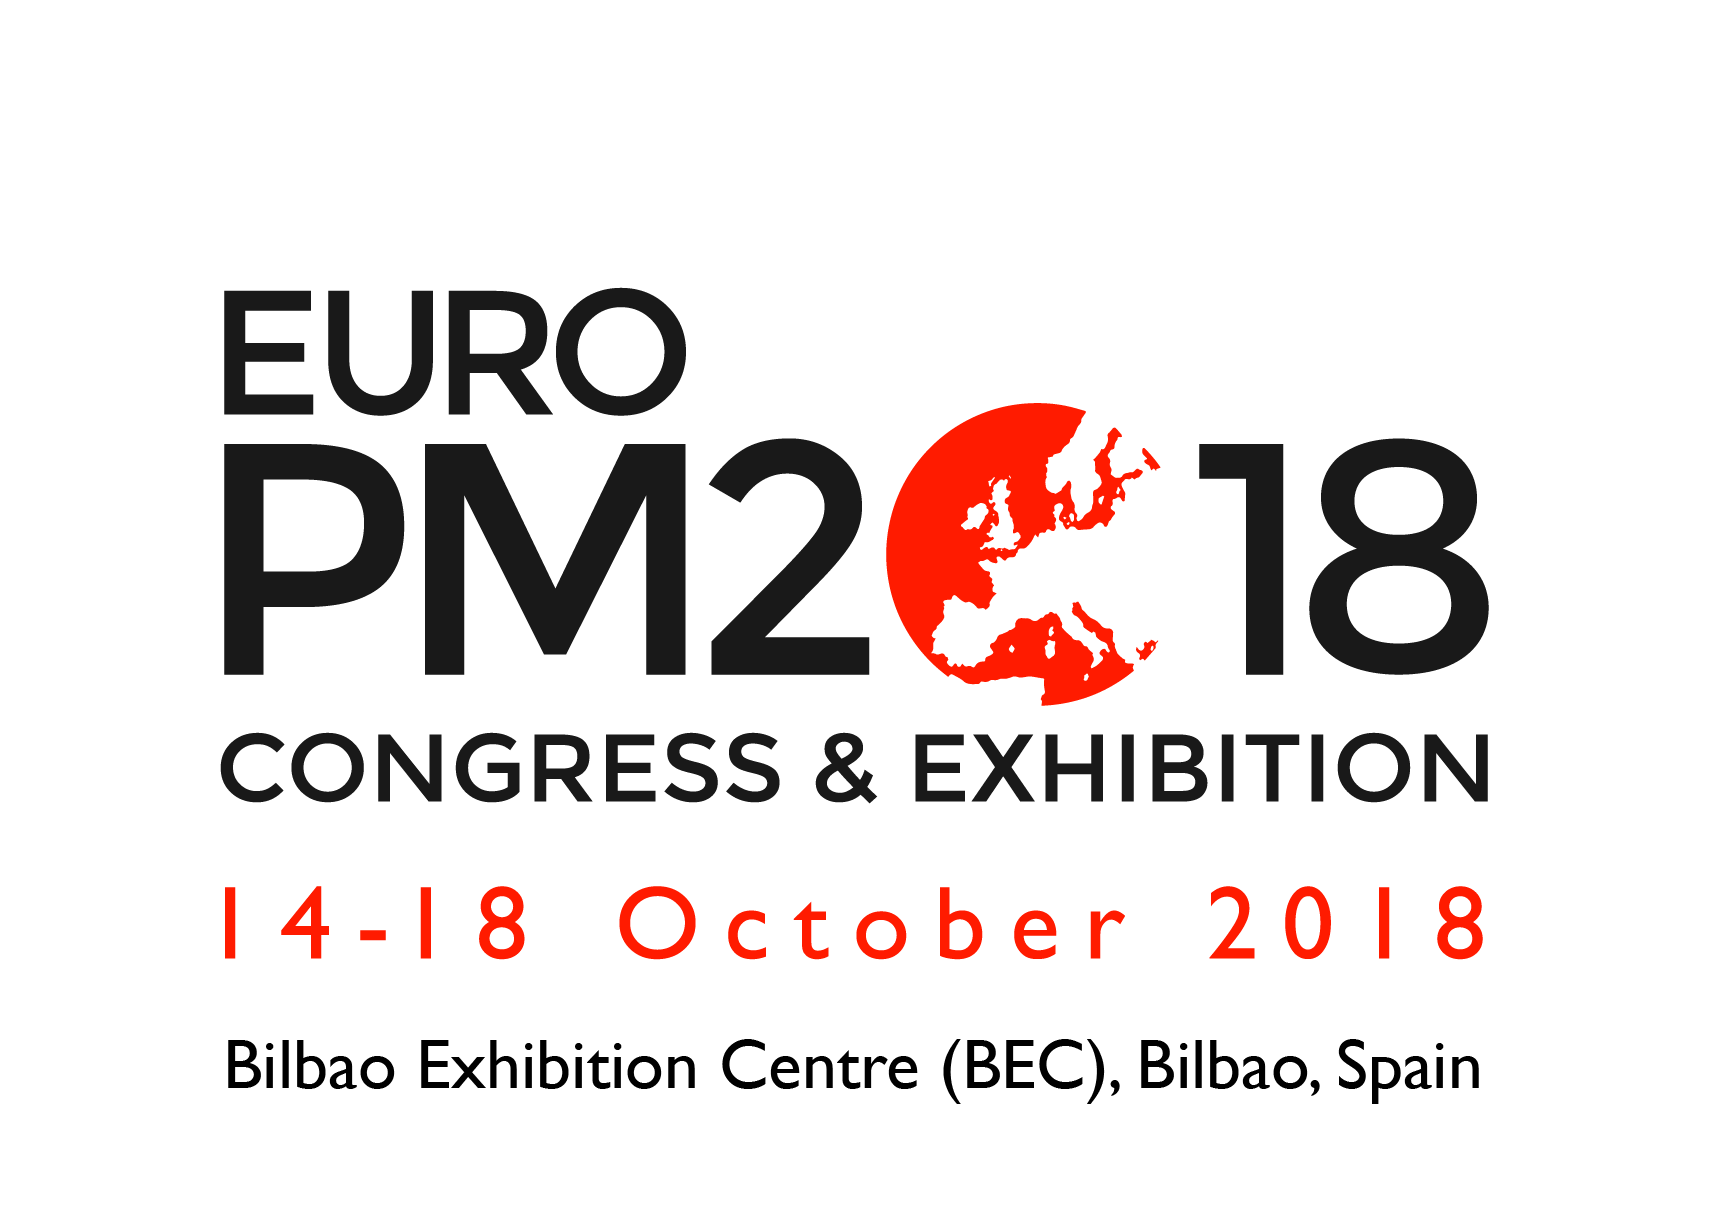 Euro PM2018 Congress & Exhibition